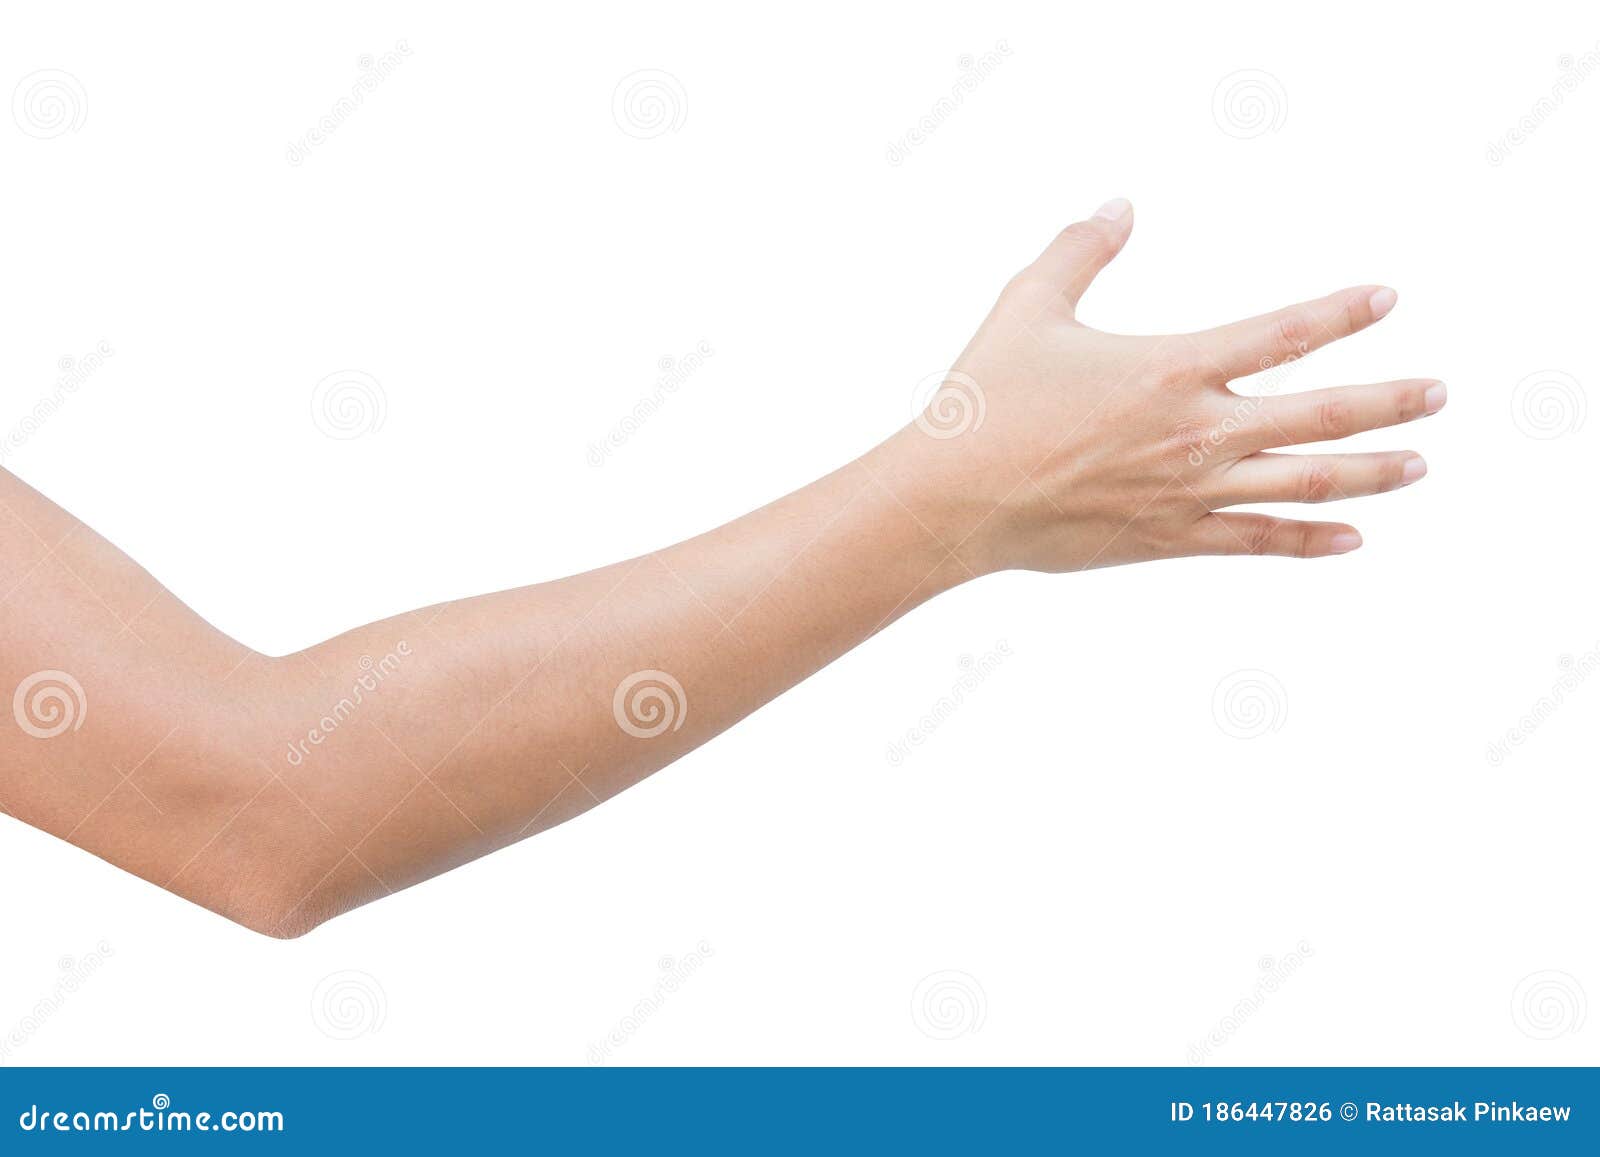 Лицевая сторона руки. Женская рука. Ладонь сбоку. Вытянутая женская рука. Женская рука от плеча.